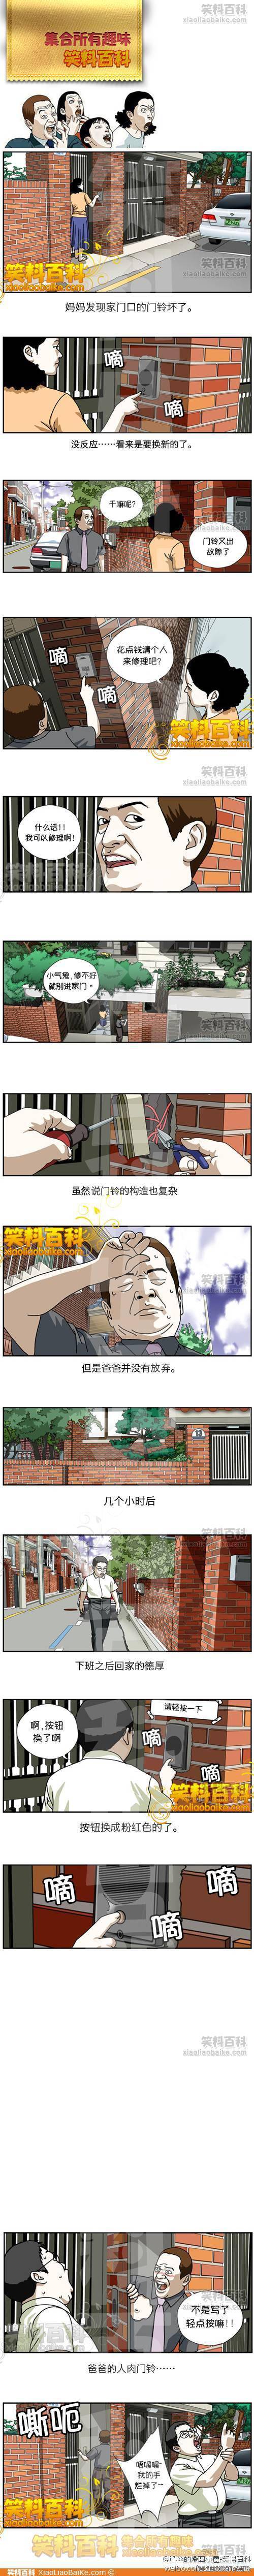 邪恶漫画爆笑囧图第51刊：犯错